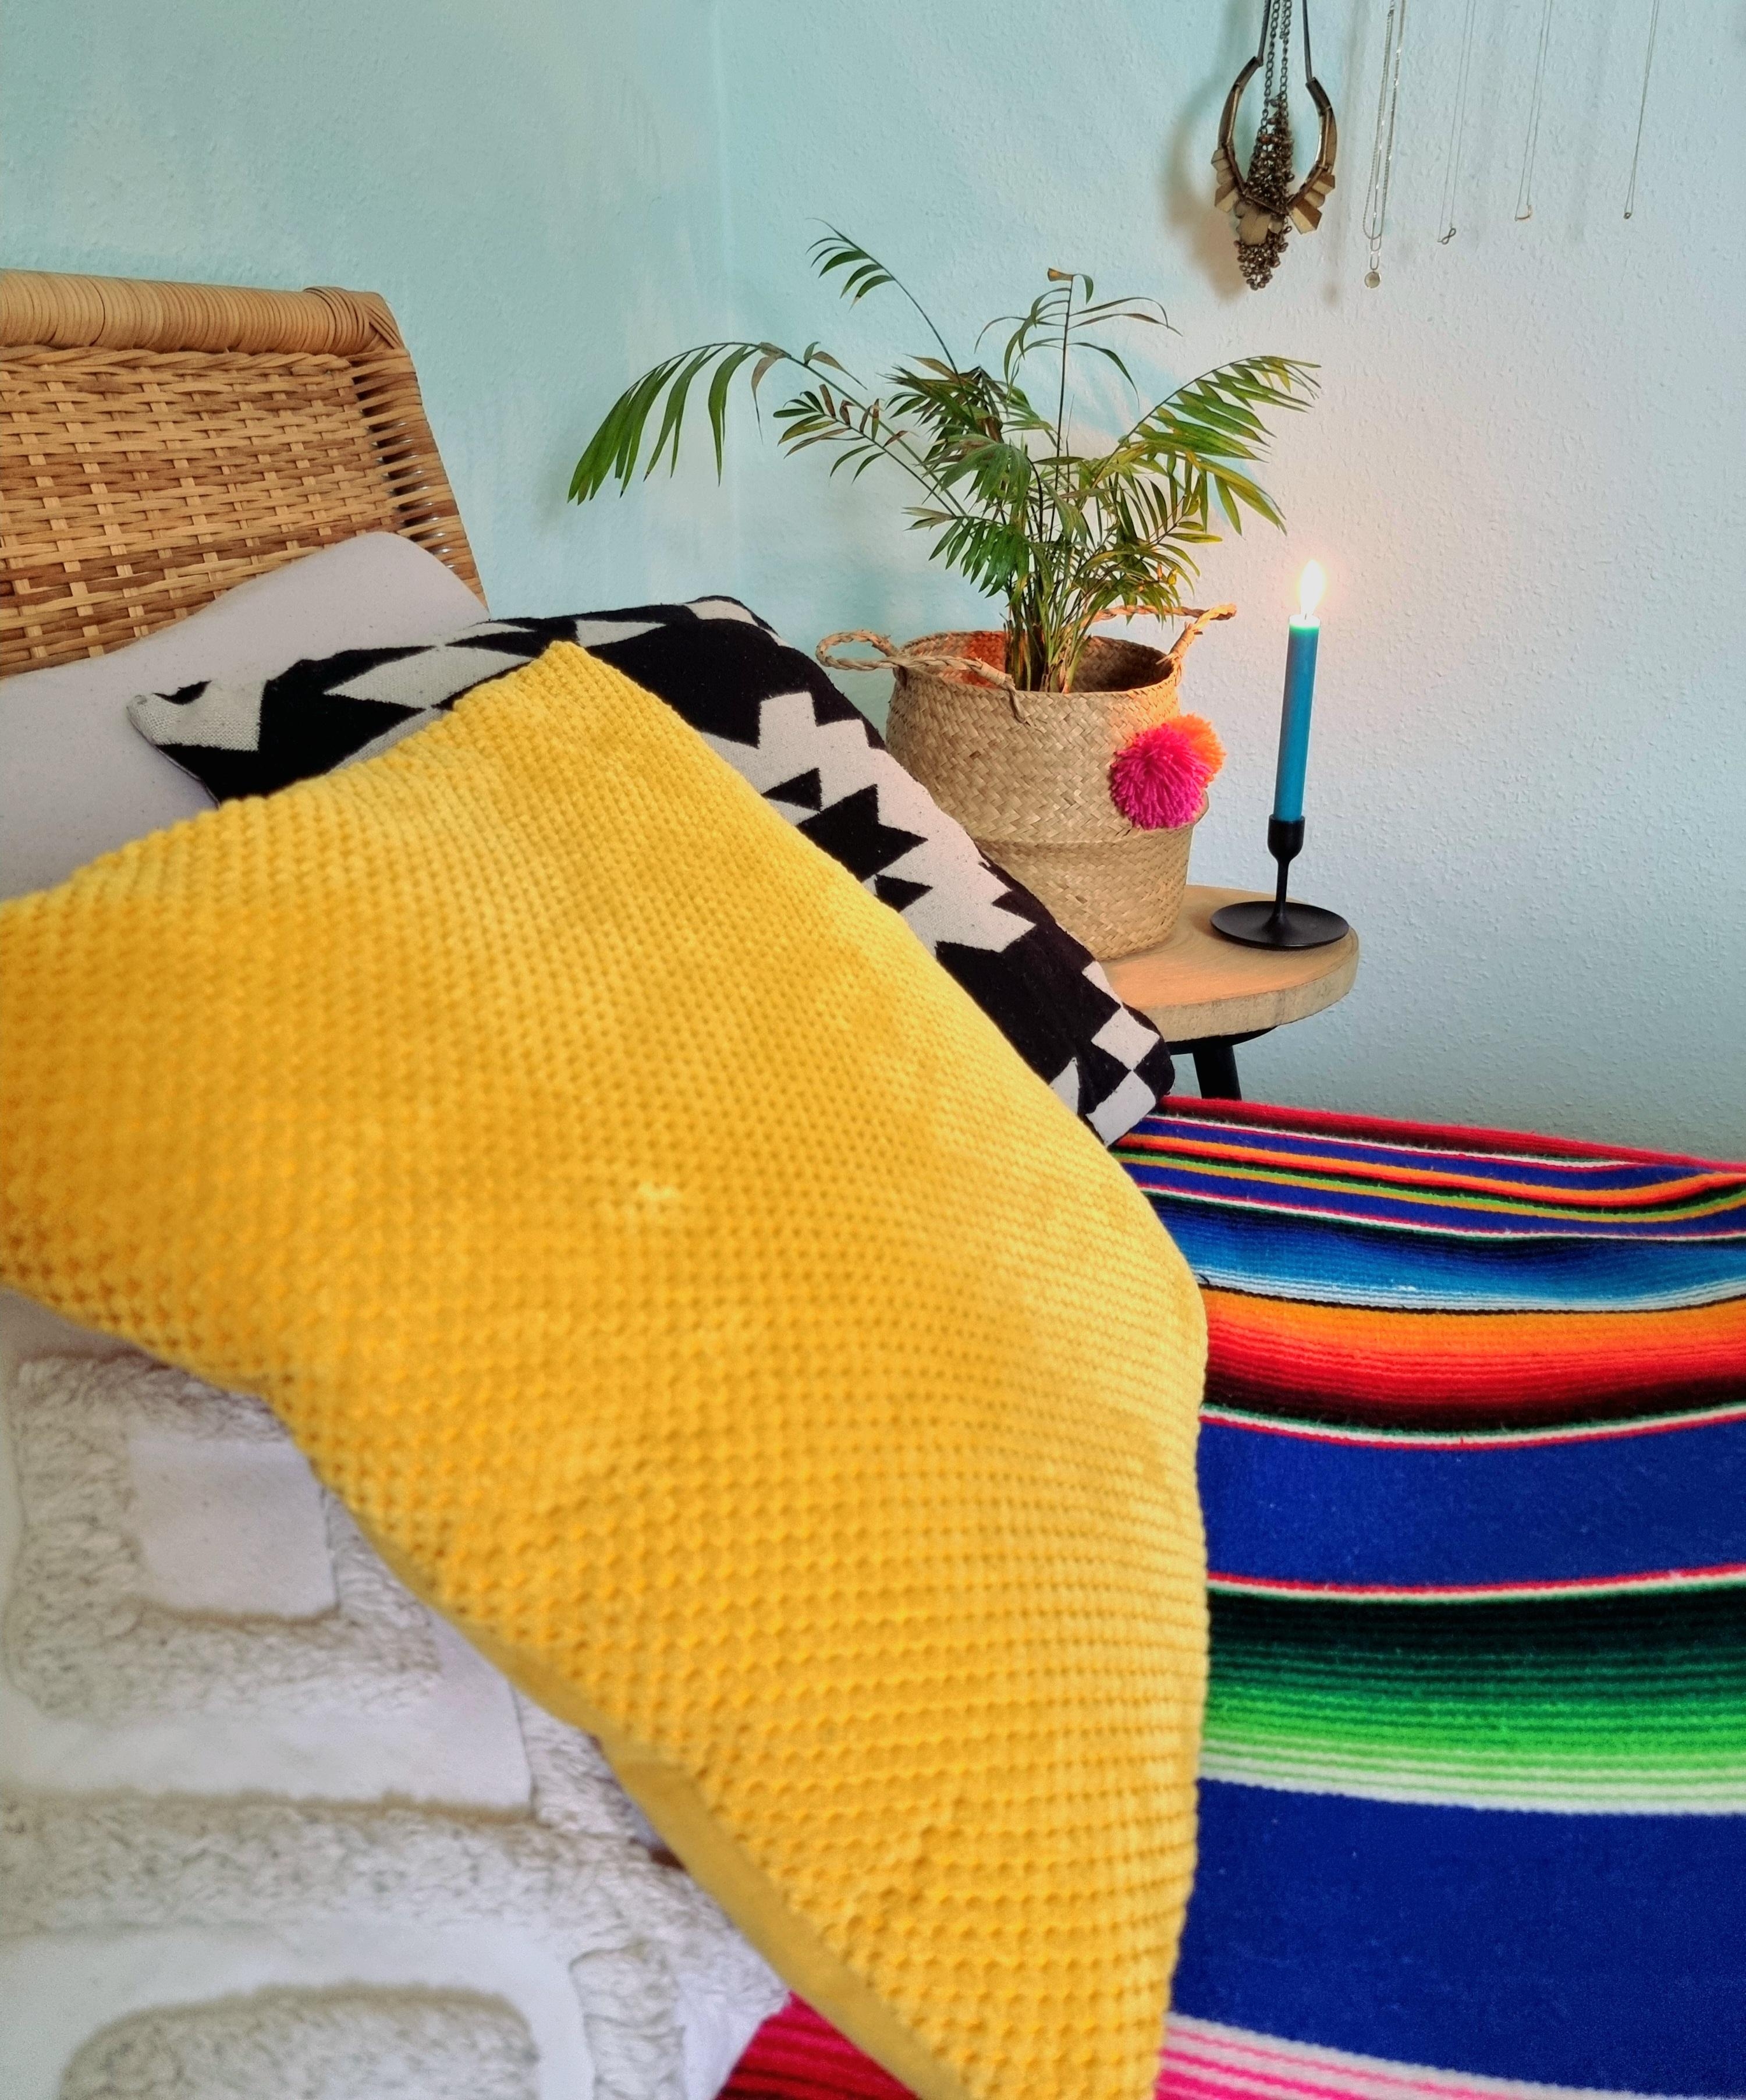 Zuhause ist es am gemütlichsten 😇..
#bedroom #bohostyle #ethno #colourfulinterior #homeinspo #blanket #homedecor 